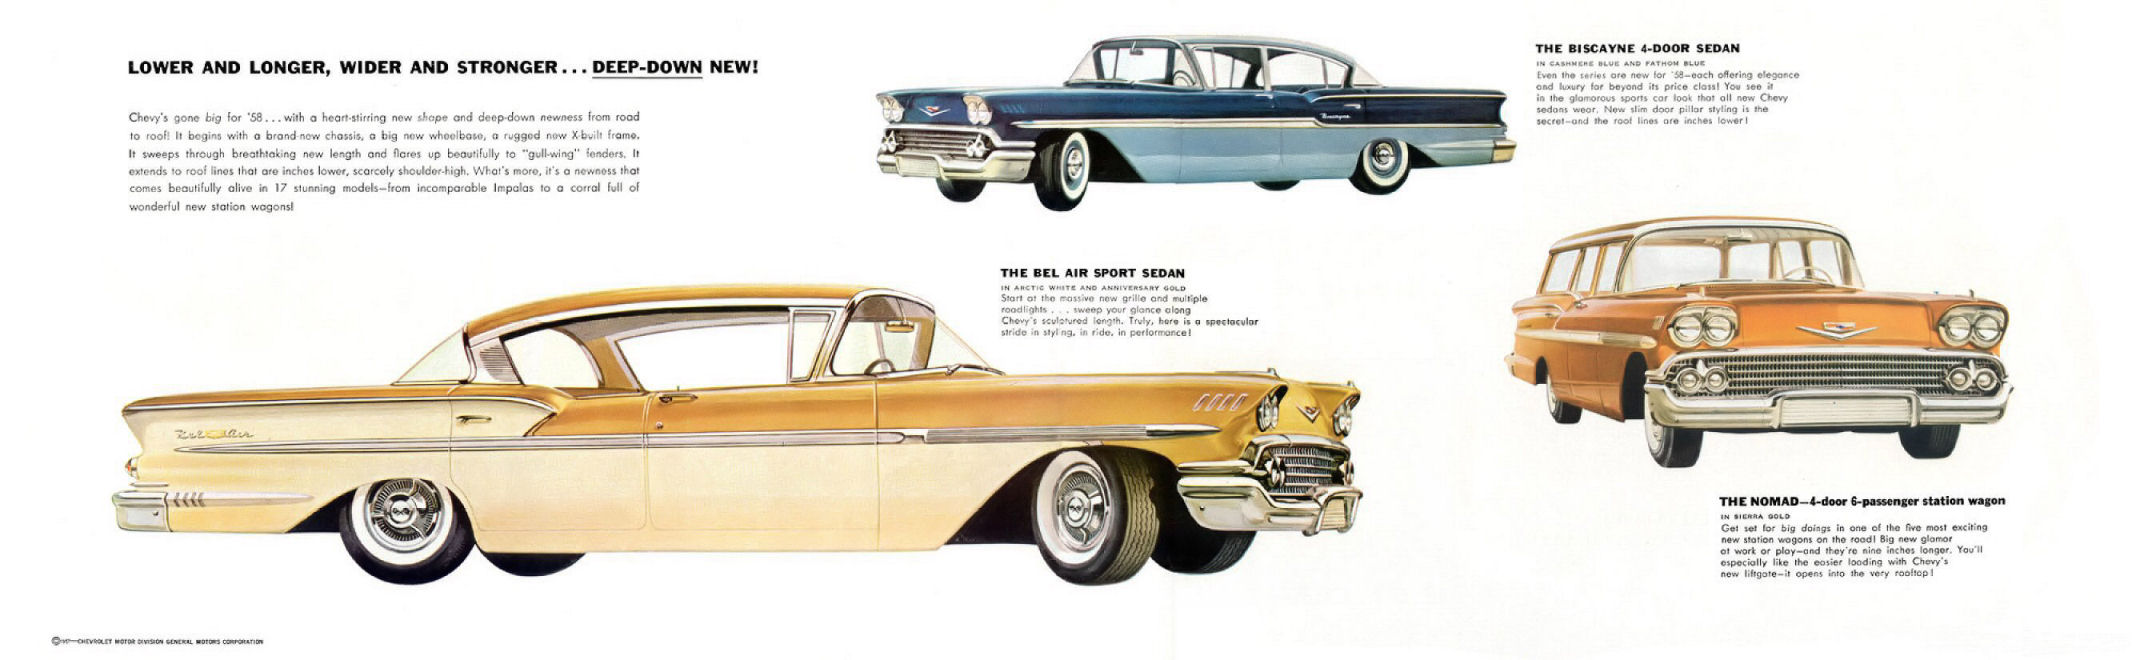 1958_Chevrolet_Foldout-02